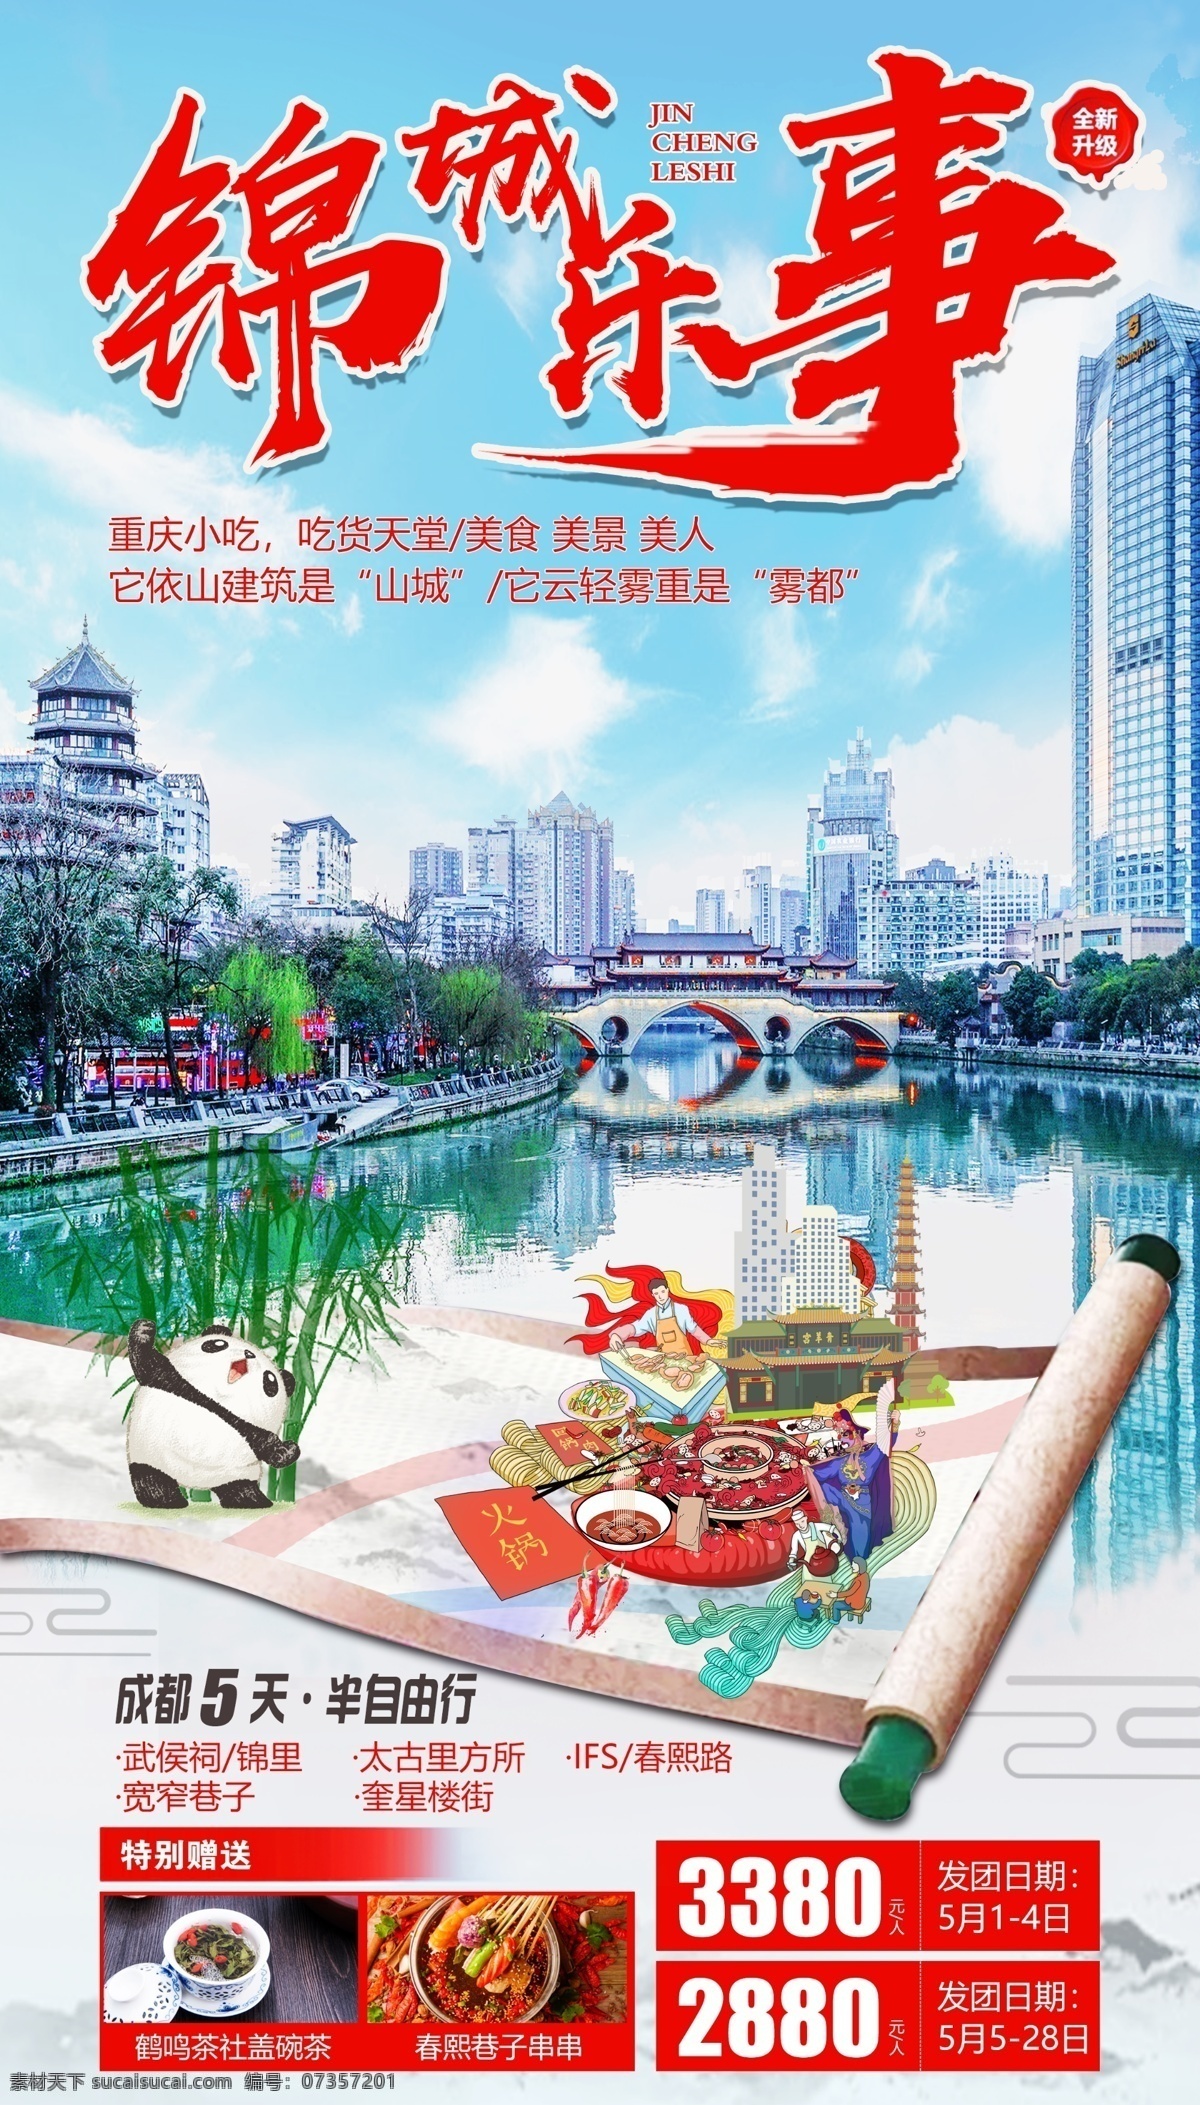 成都旅游海报 成都 四川 火锅 大熊猫 旅游海报 旅行 创意 简洁 鲜明